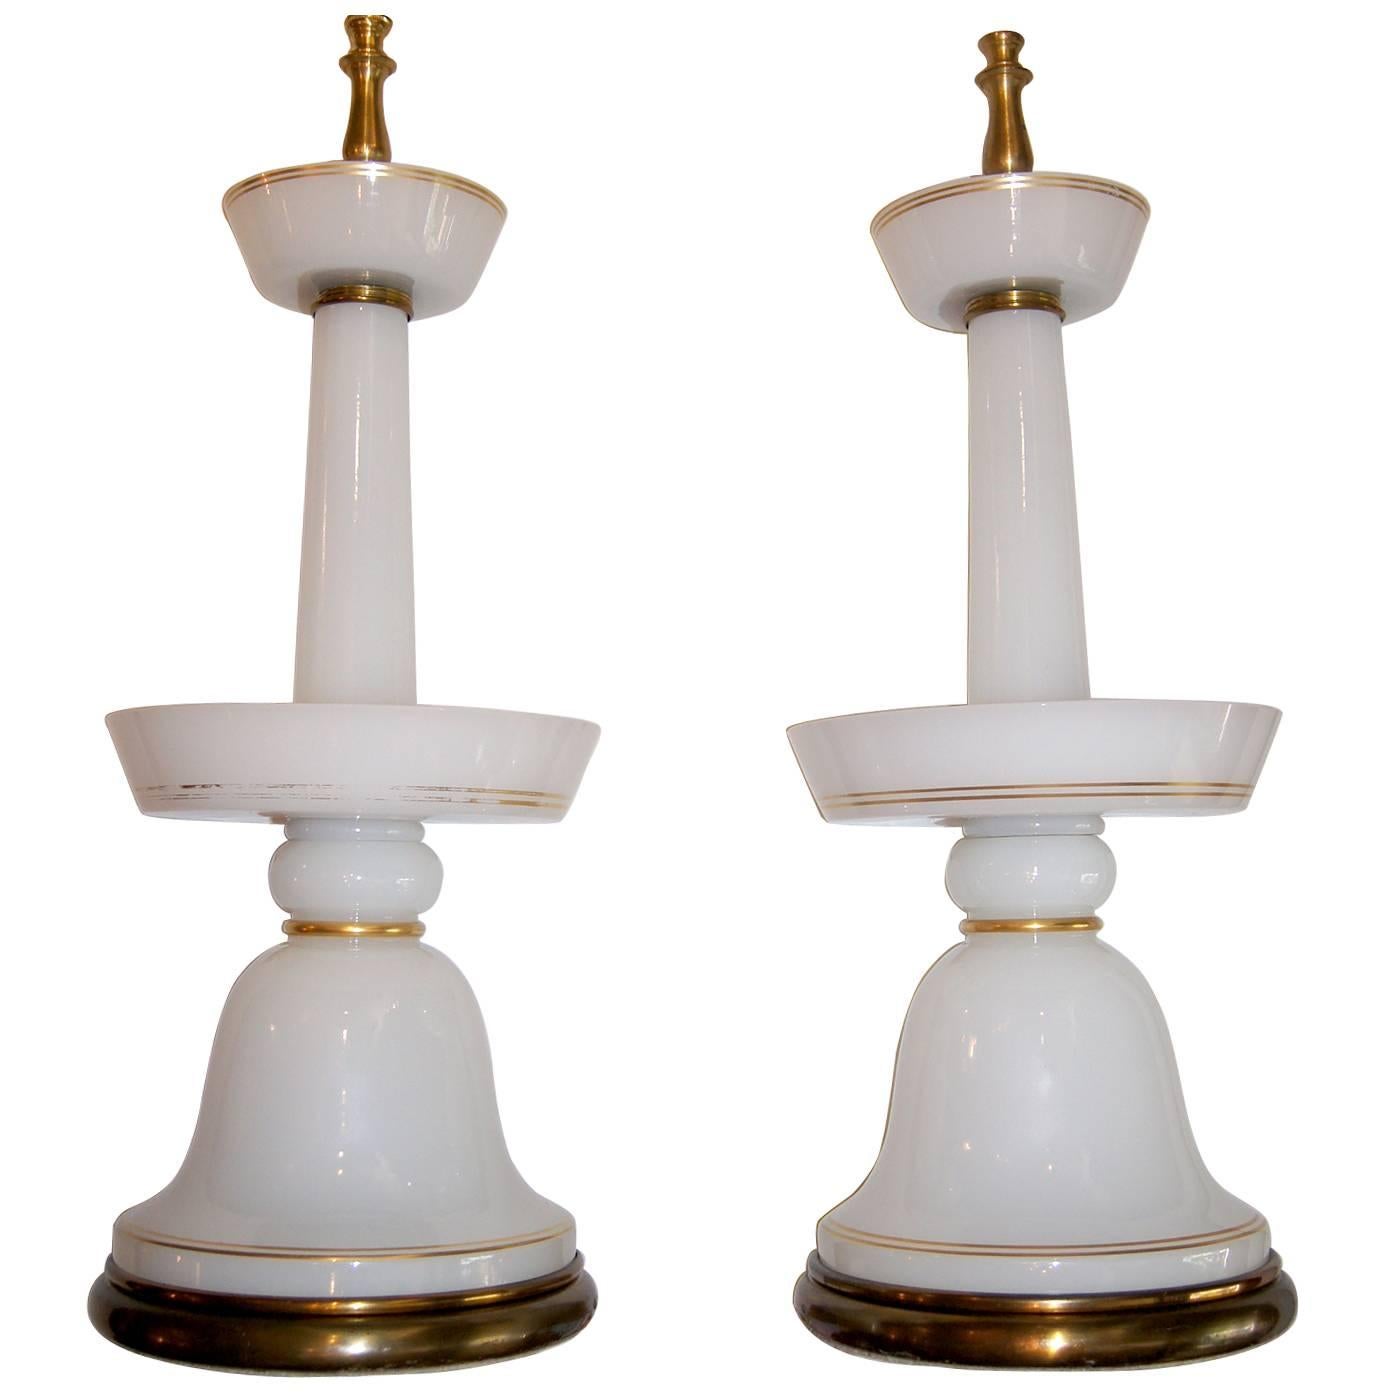 Une paire de lampes françaises en verre opalin avec des détails dorés, datant des années 1940.

Mesures :
Hauteur du corps : 20 ?
Hauteur jusqu'au support de l'abat-jour : 32 pouces.